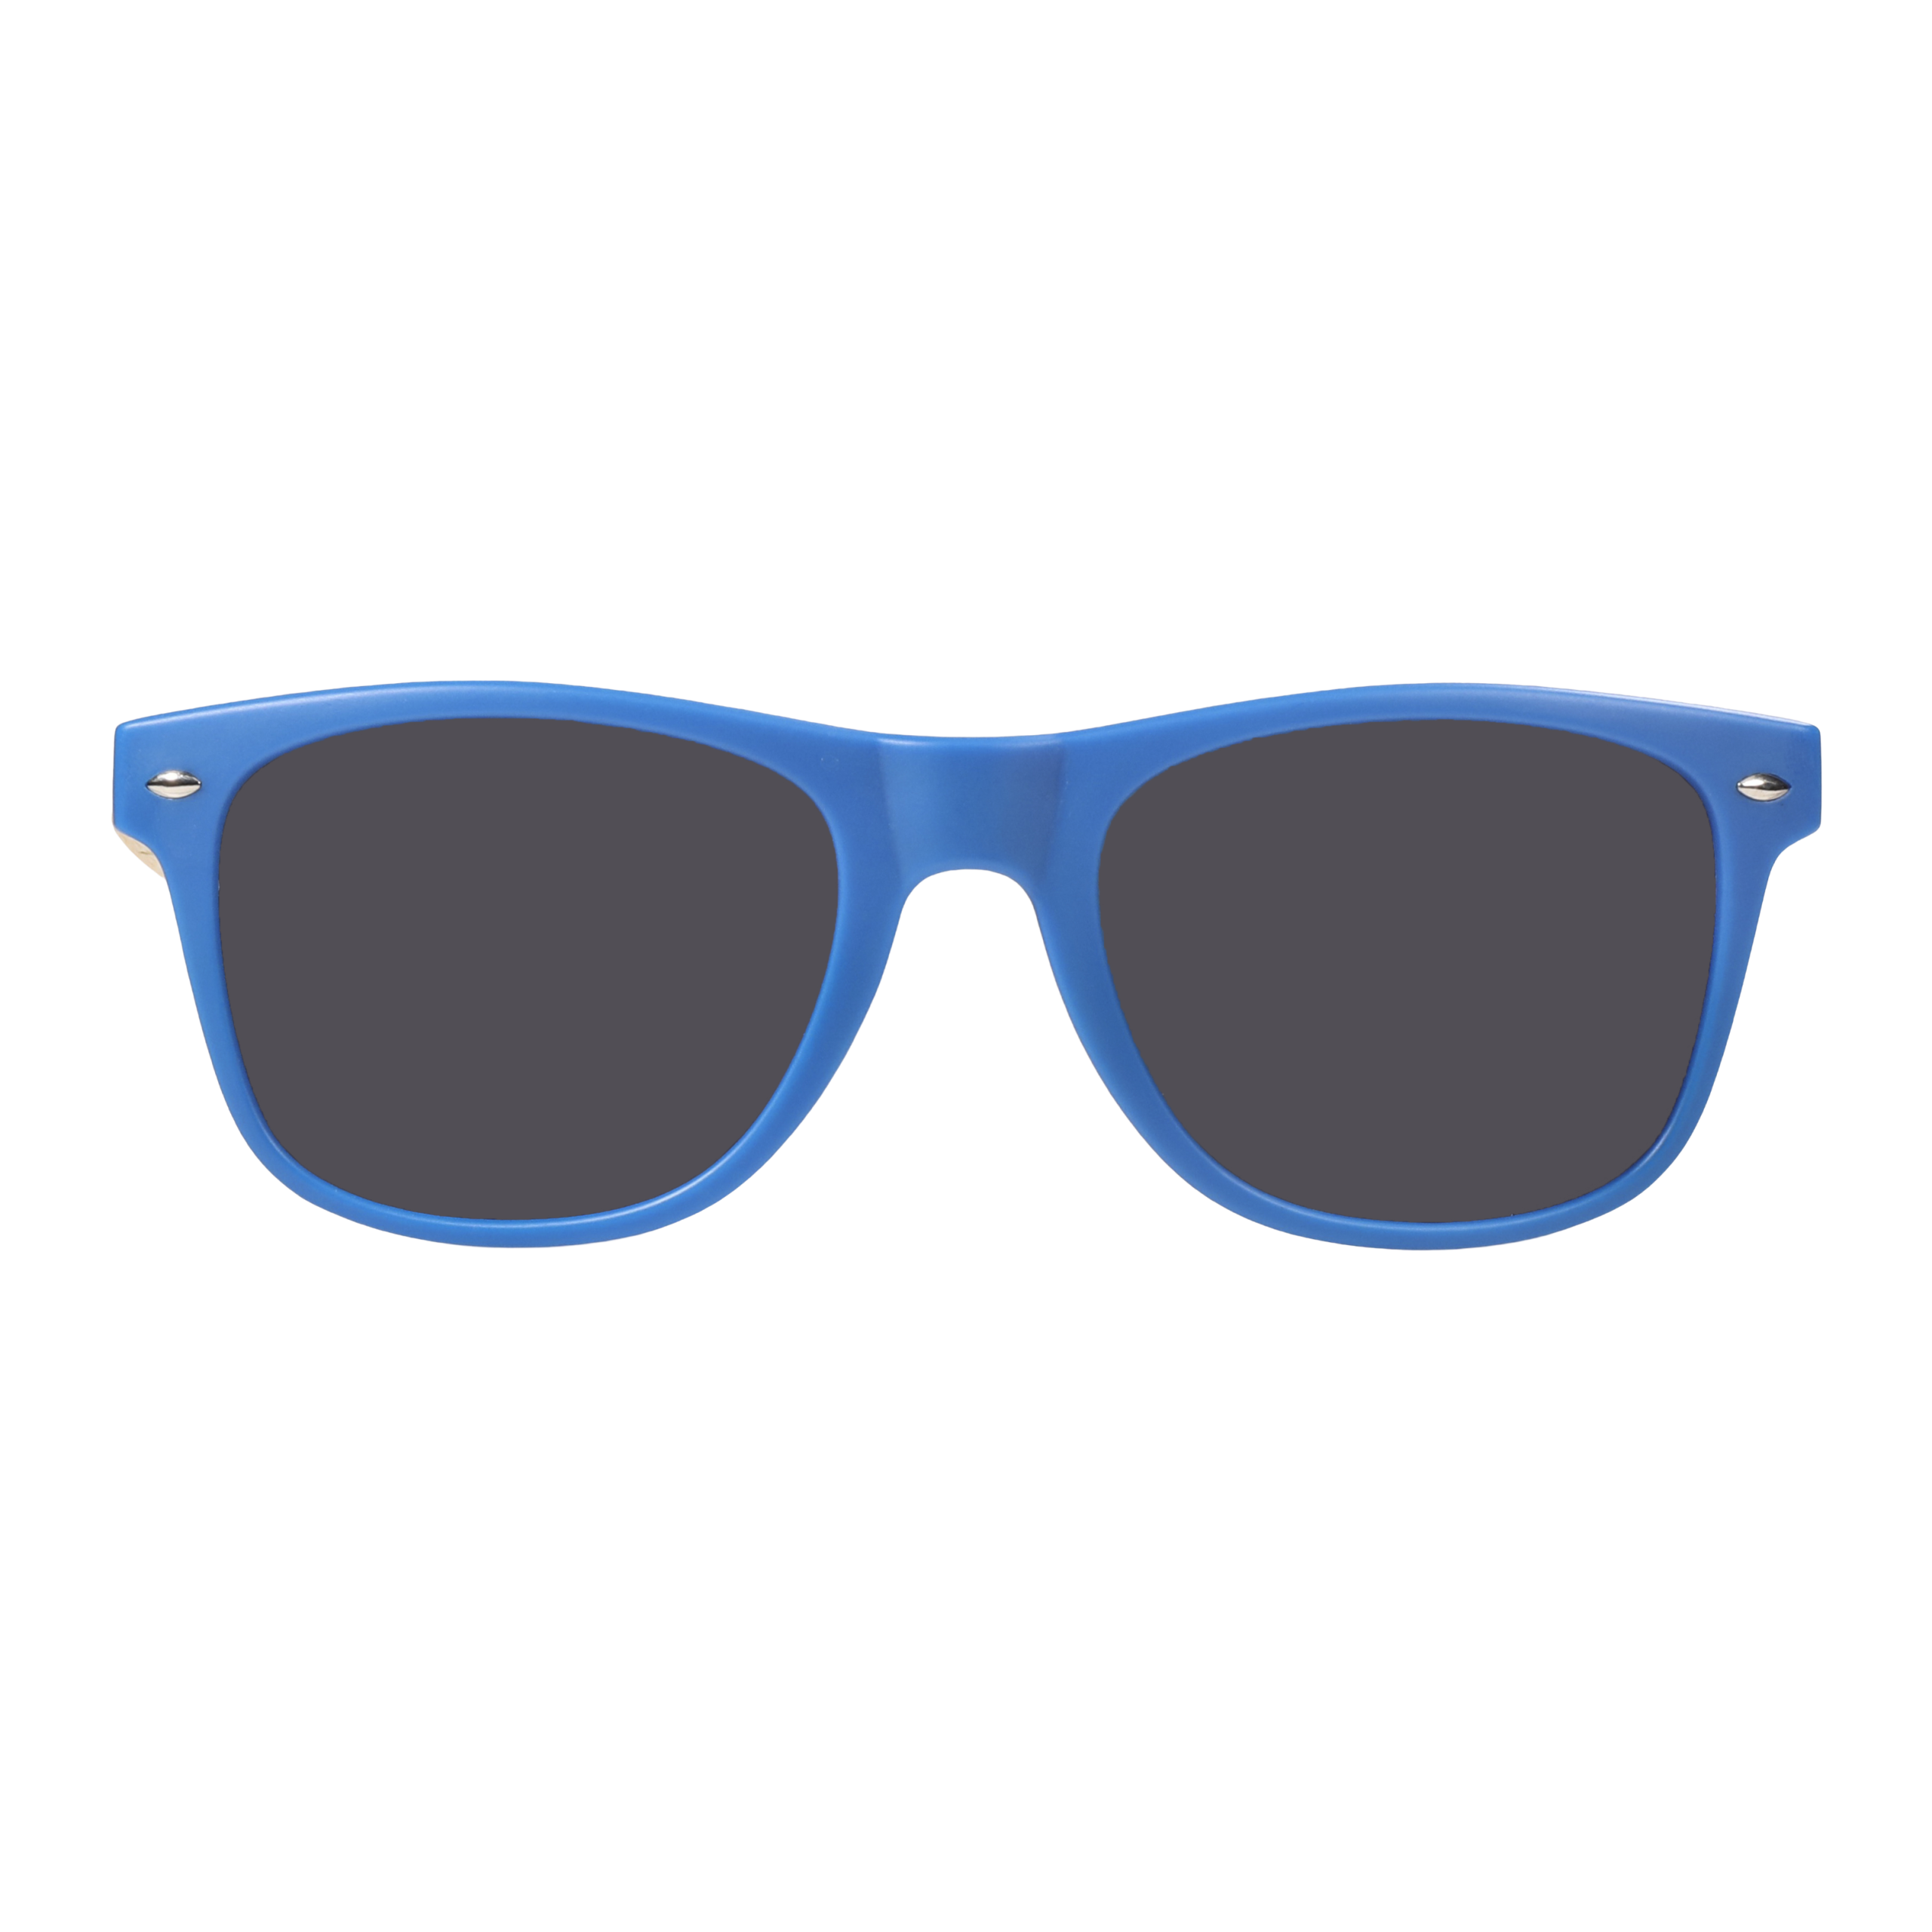 Bamboo Sunglasses - Matoaka Blue | PLANK Eyewear